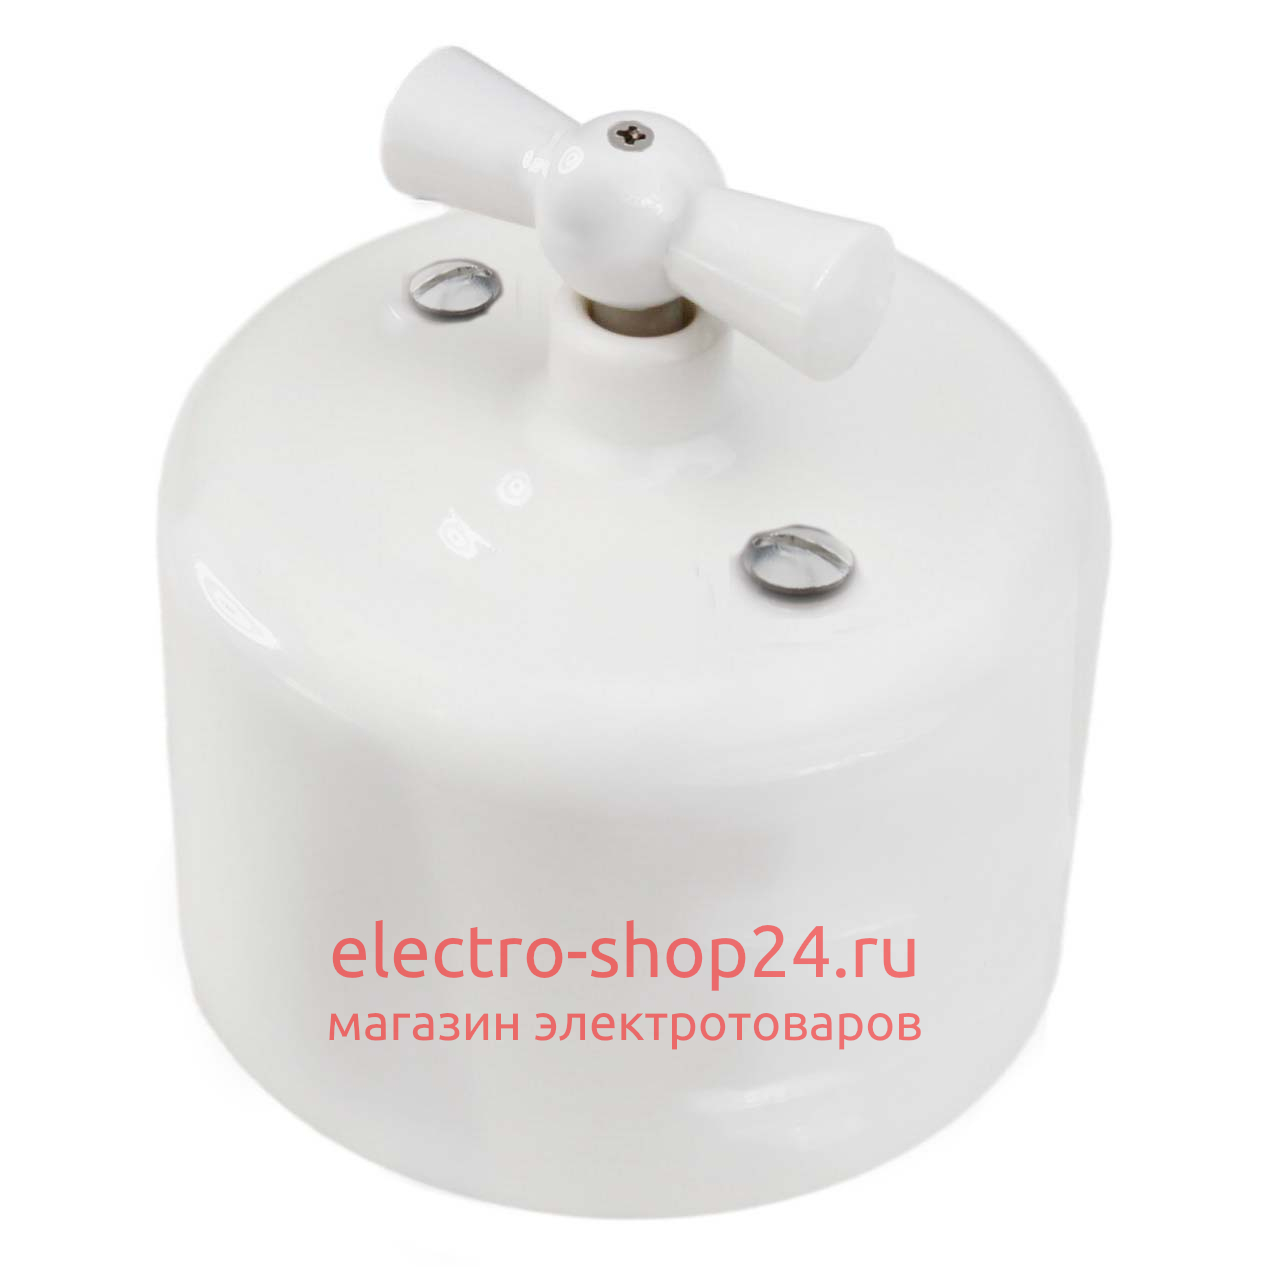 Выключатель 1-клавишный Bironi Ришелье керамика белый R1-210-01 R1-210-01 - магазин электротехники Electroshop